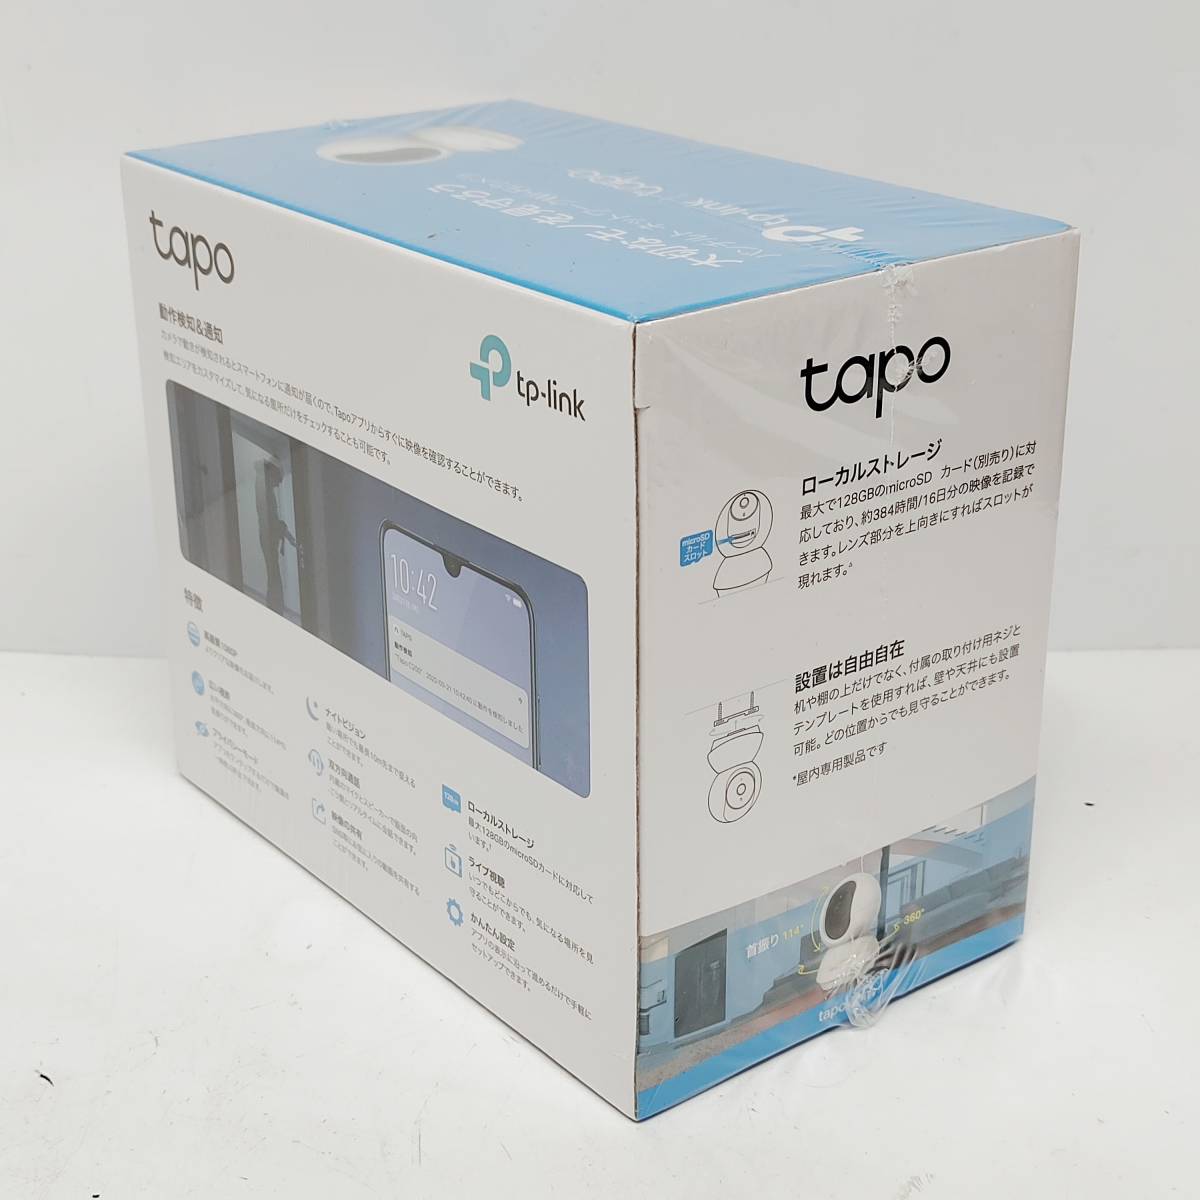 * не использовался tp-link Tapo C200 дырокол ruto сеть Wi-Fi камера нераспечатанный Smart система безопасности предотвращение преступления работа обнаружение прибор ночного видения высокое разрешение S2408